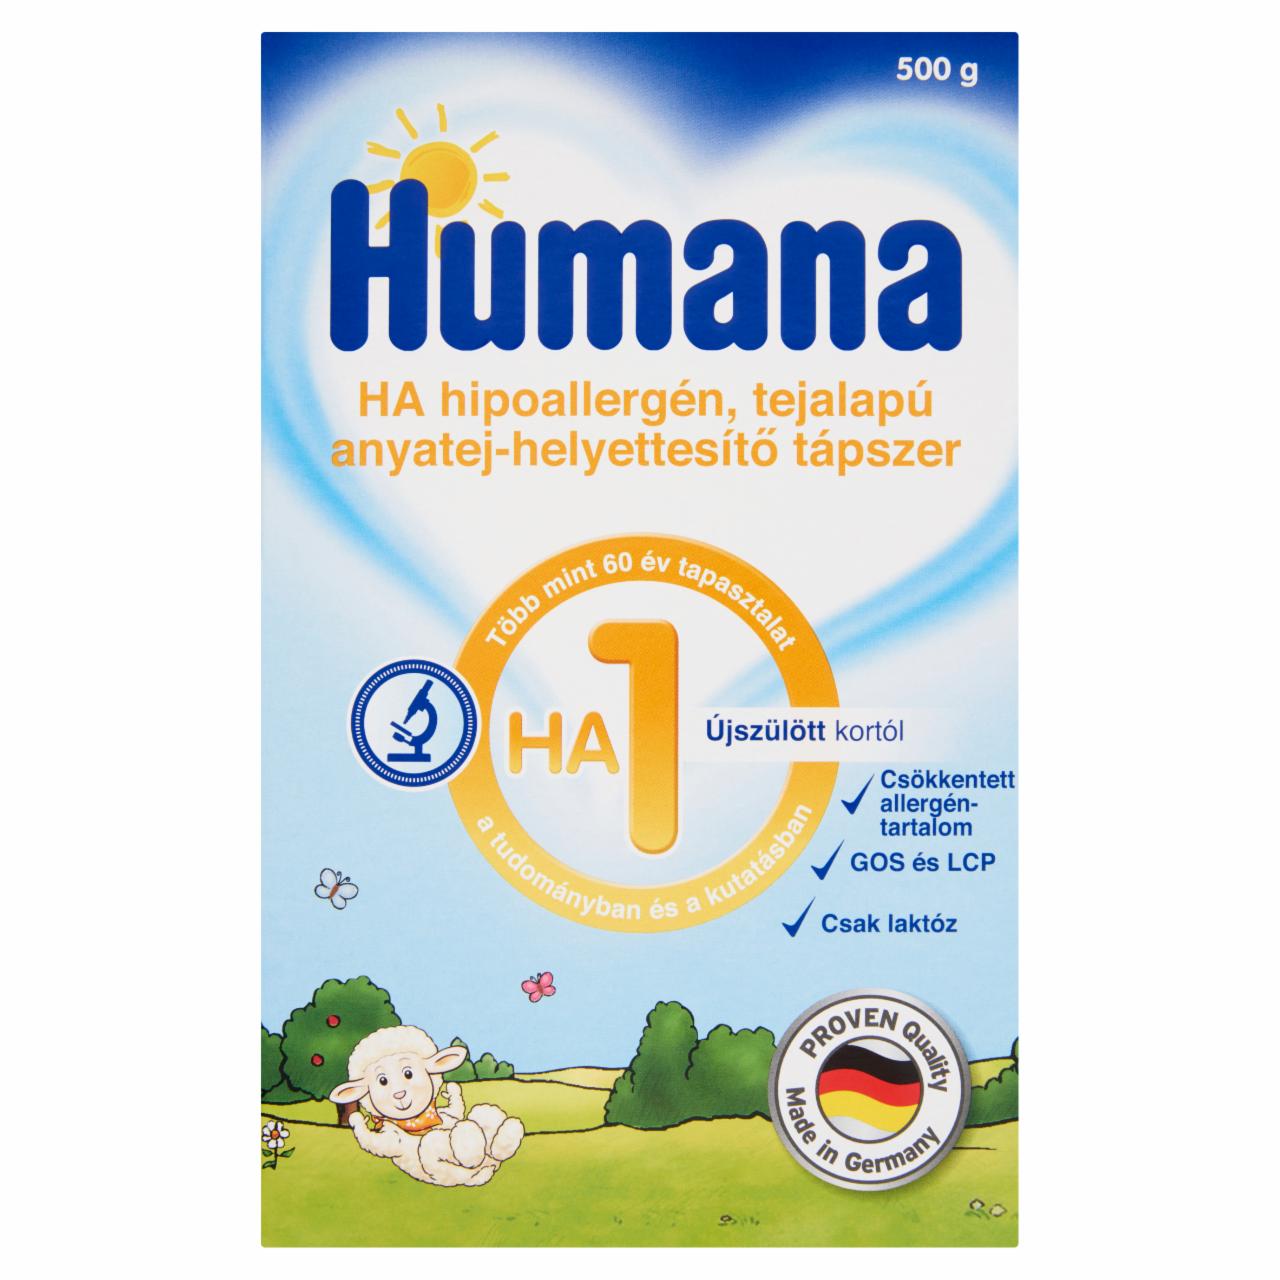 Képek - Humana HA 1 hipoallergén, tejalapú anyatej-helyettesítő tápszer újszülött kortól 500 g